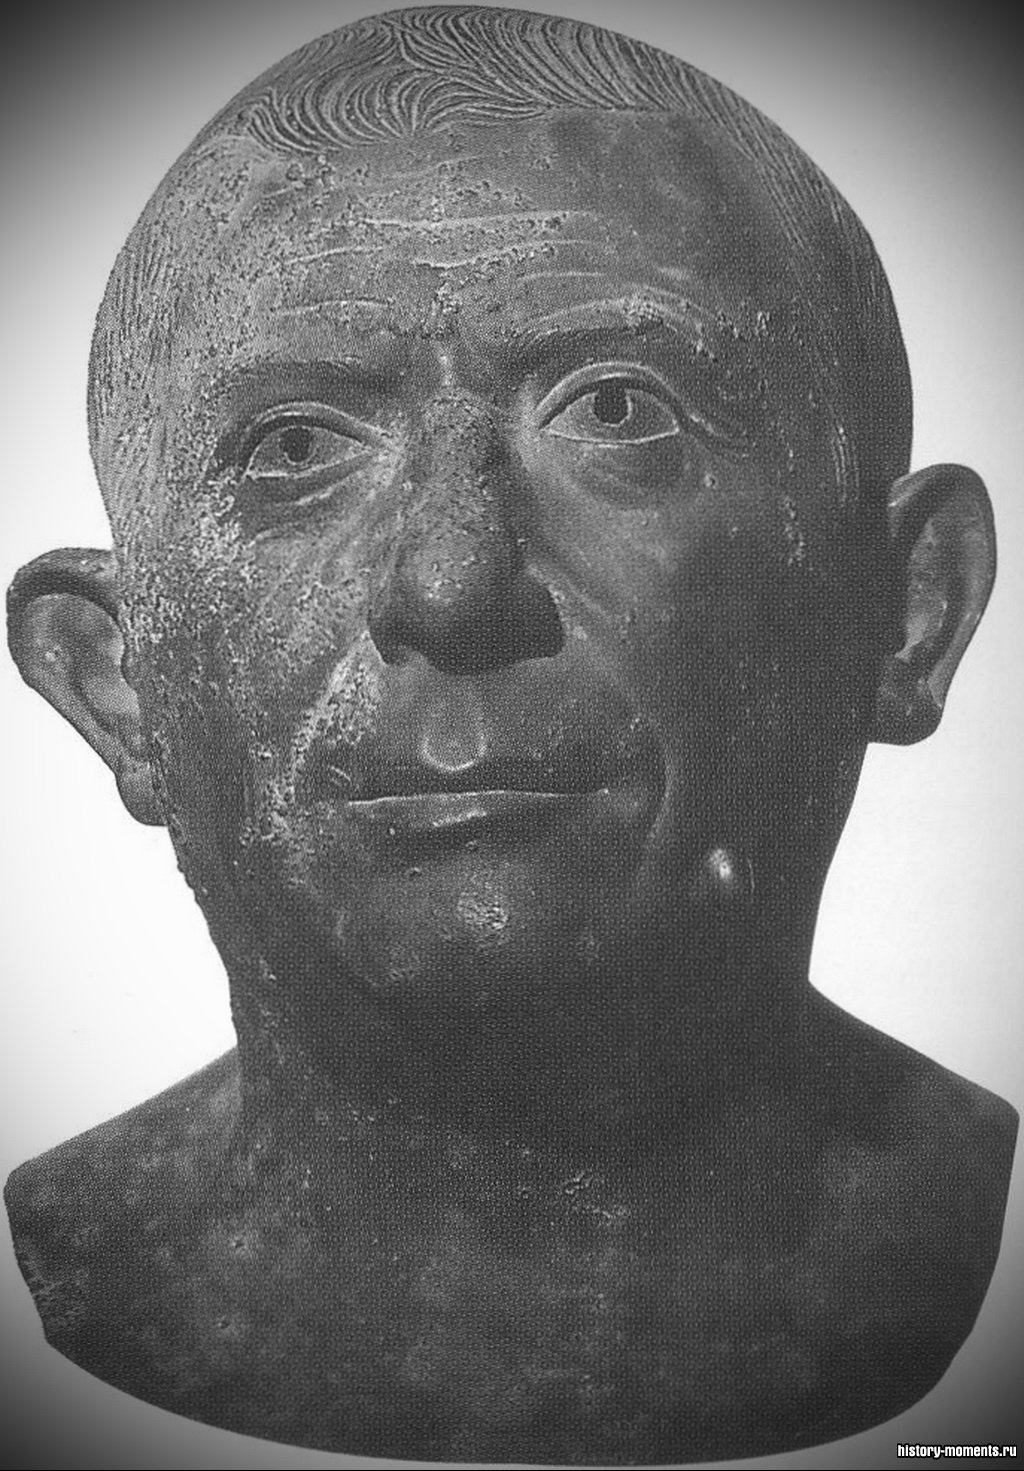 Бронзовая скульптура римлянина средних лет, изображающая его без прикрас, то есть так, как он выглядел в жизни.